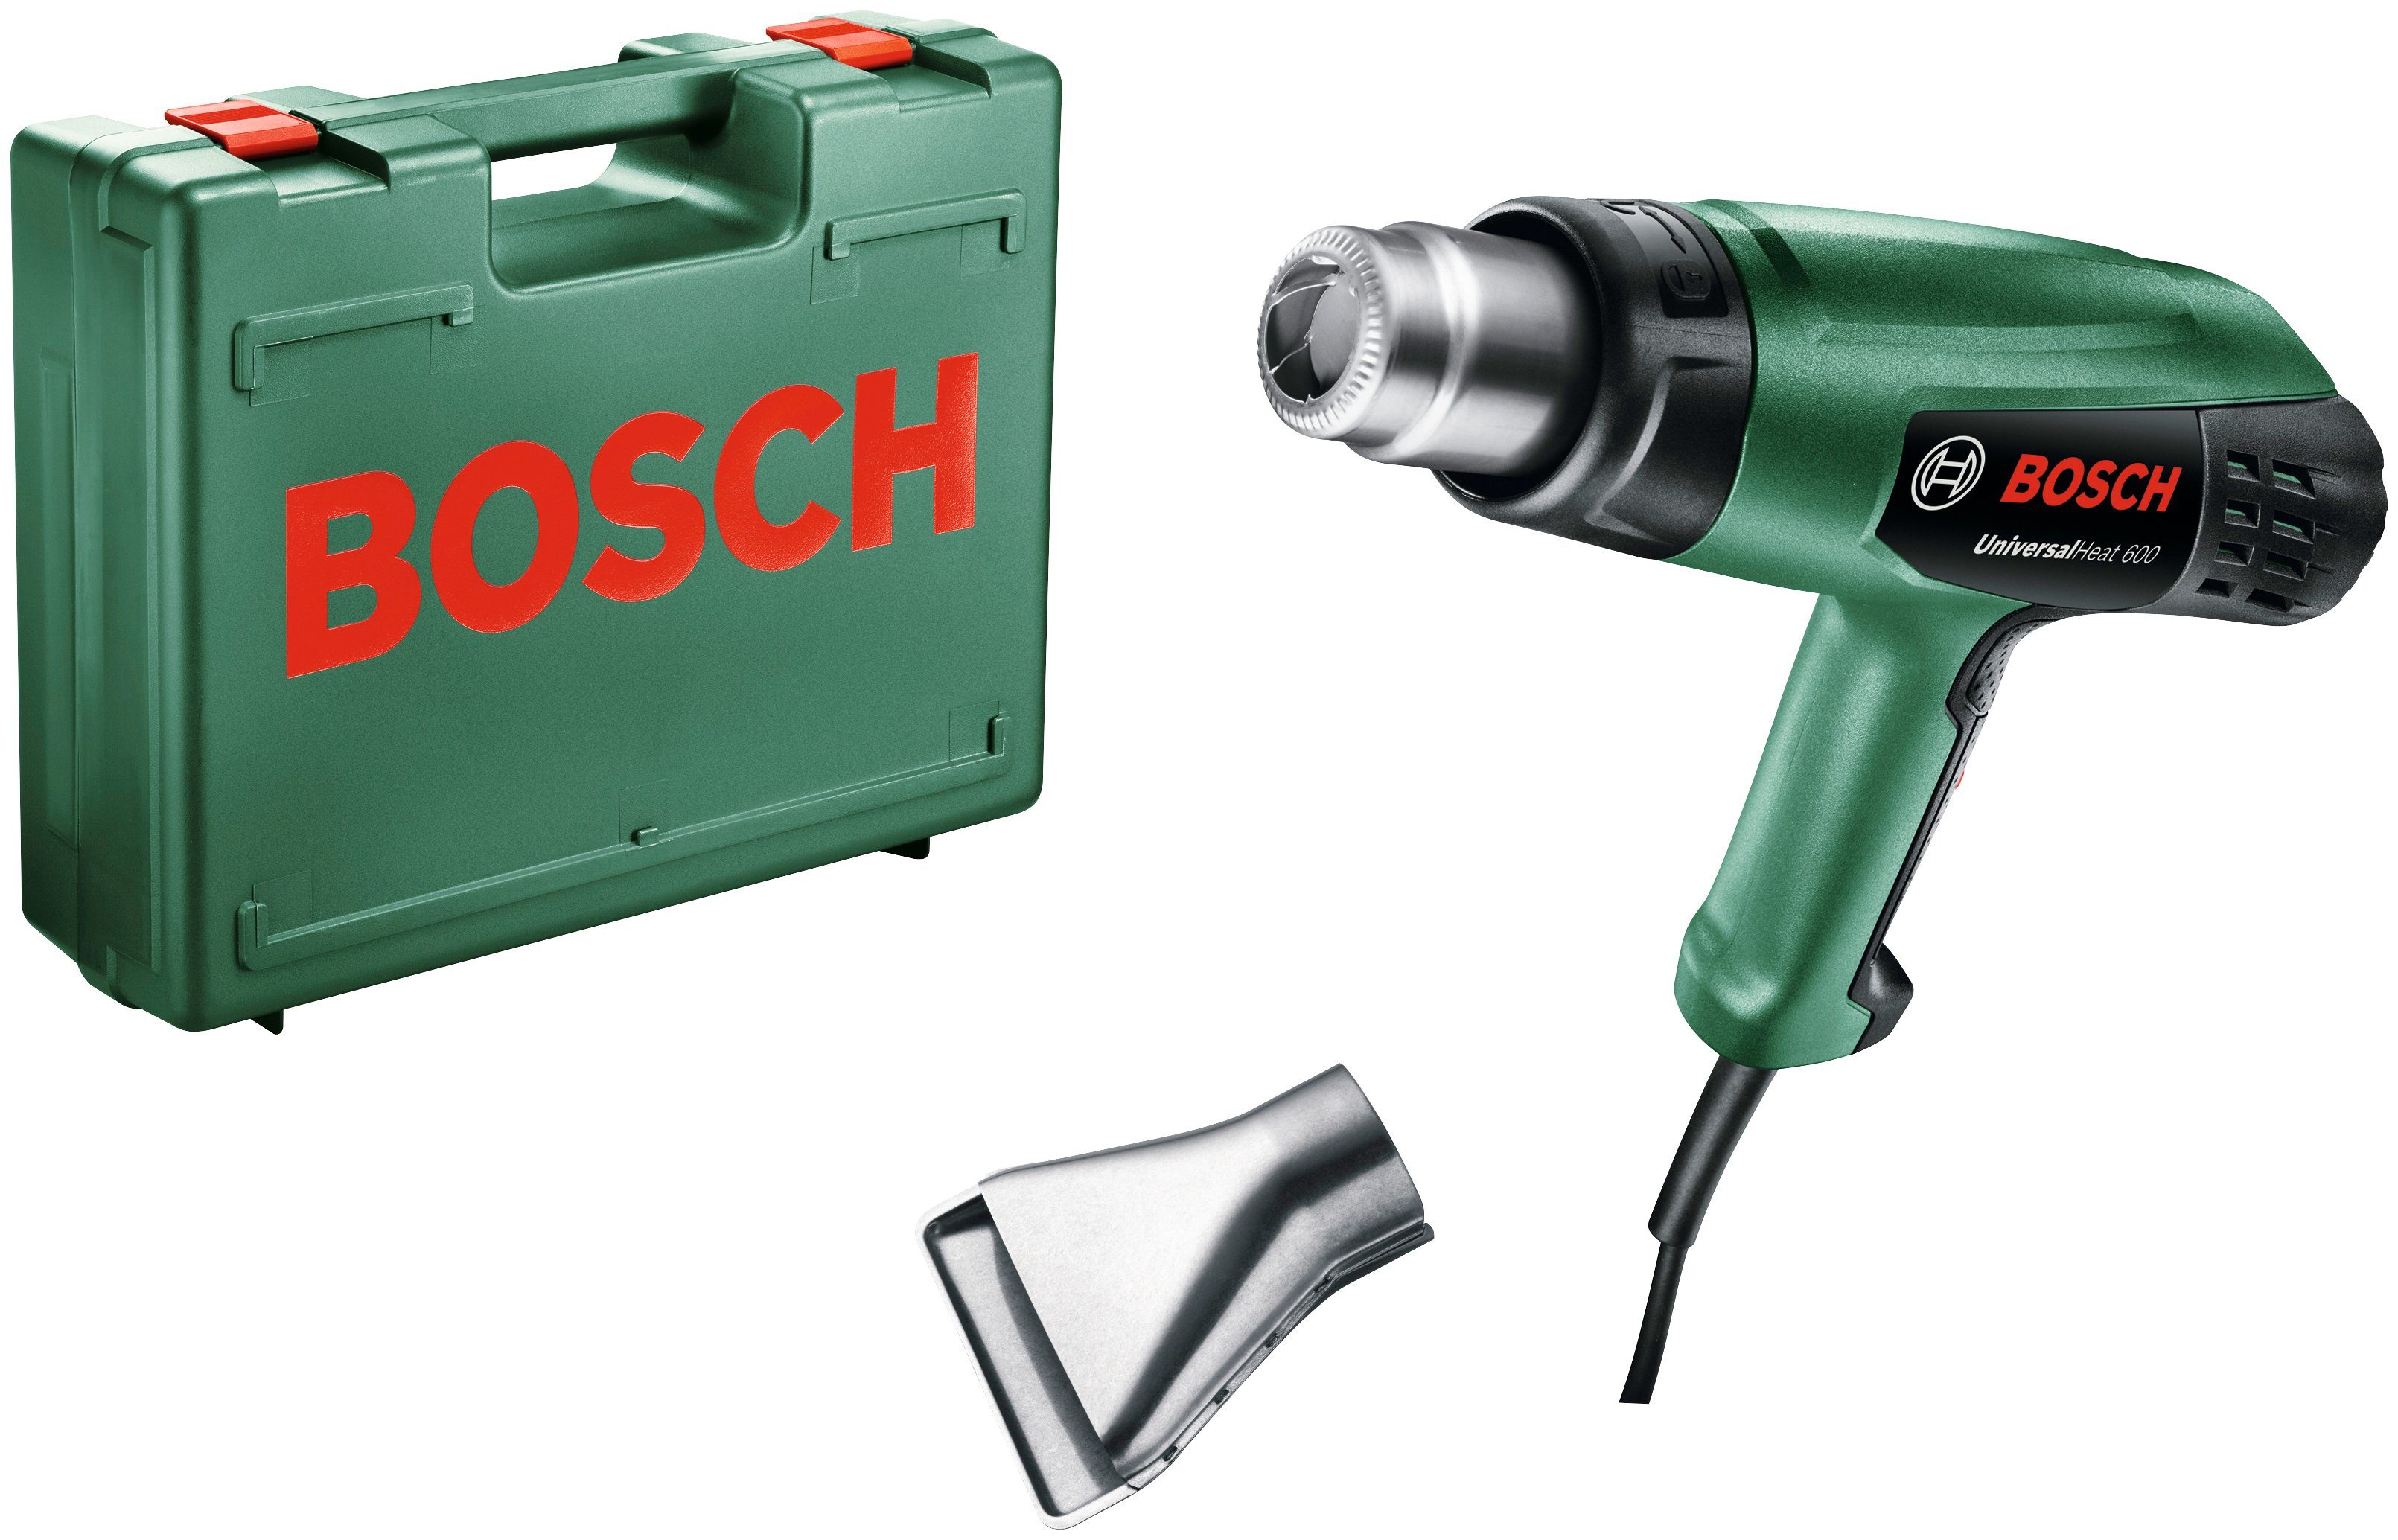 Bosch 600 UniversalHeat in bis Garden Heißluftgebläse 600, °C & max. 1800 W, Home